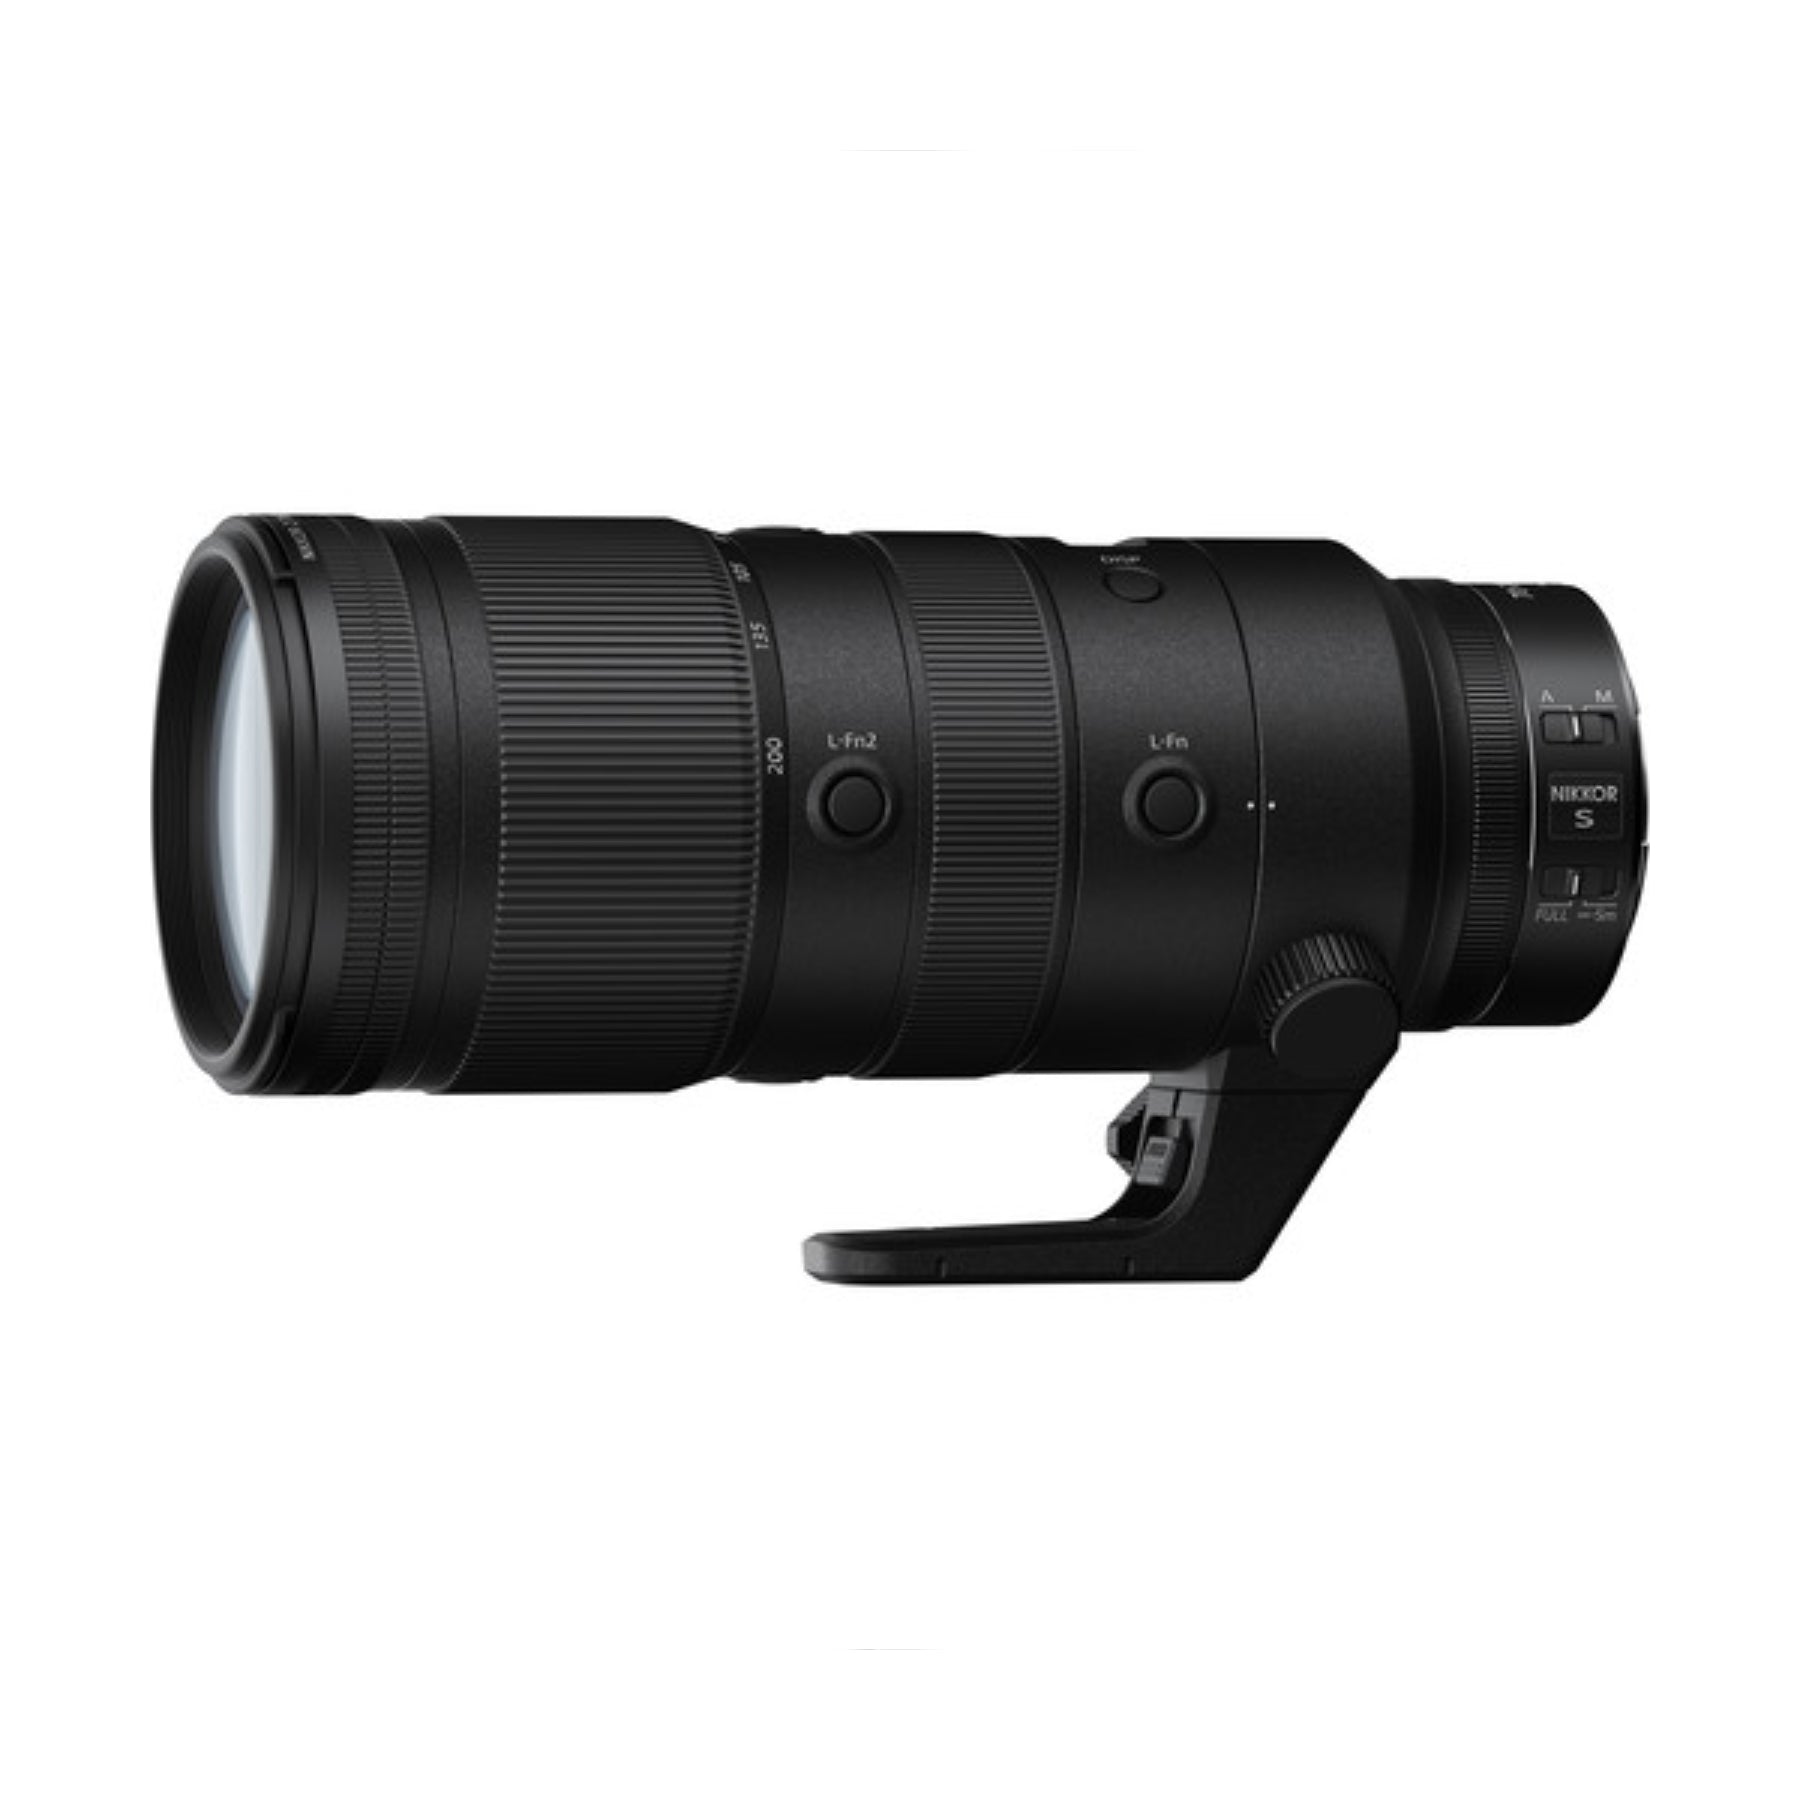 Buy Nikon NIKKOR Z 70-200mm f/2.8 VR S Lens at Topic Store